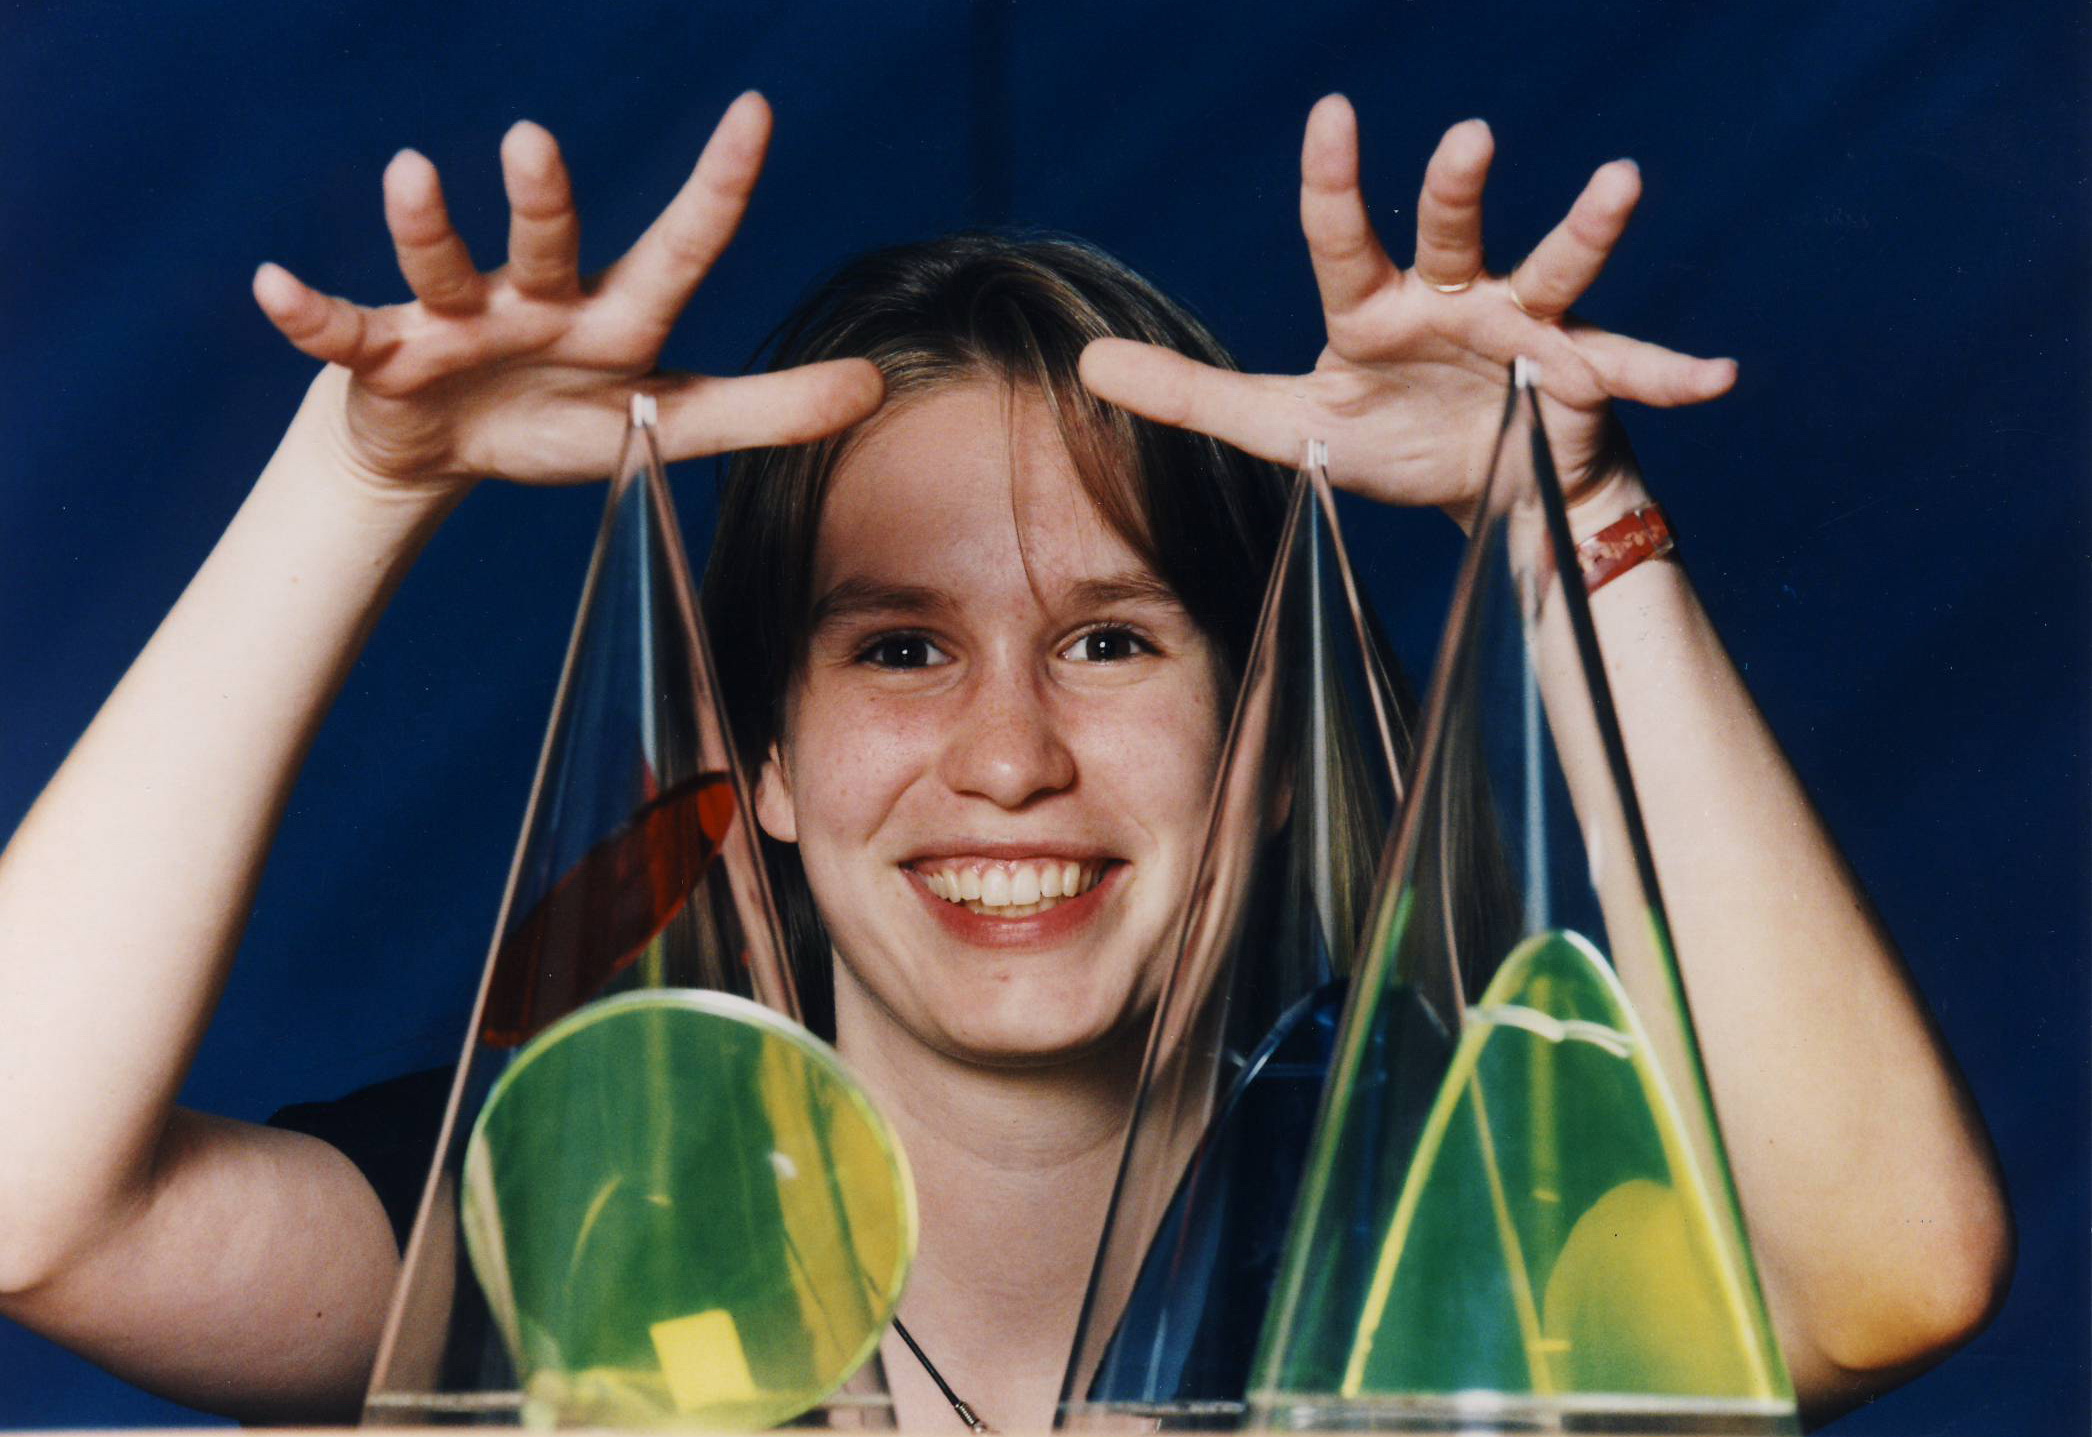 Rauer als "Jugend forscht"-Gewinnerin 1996. (Foto: Stiftung jugend forscht)